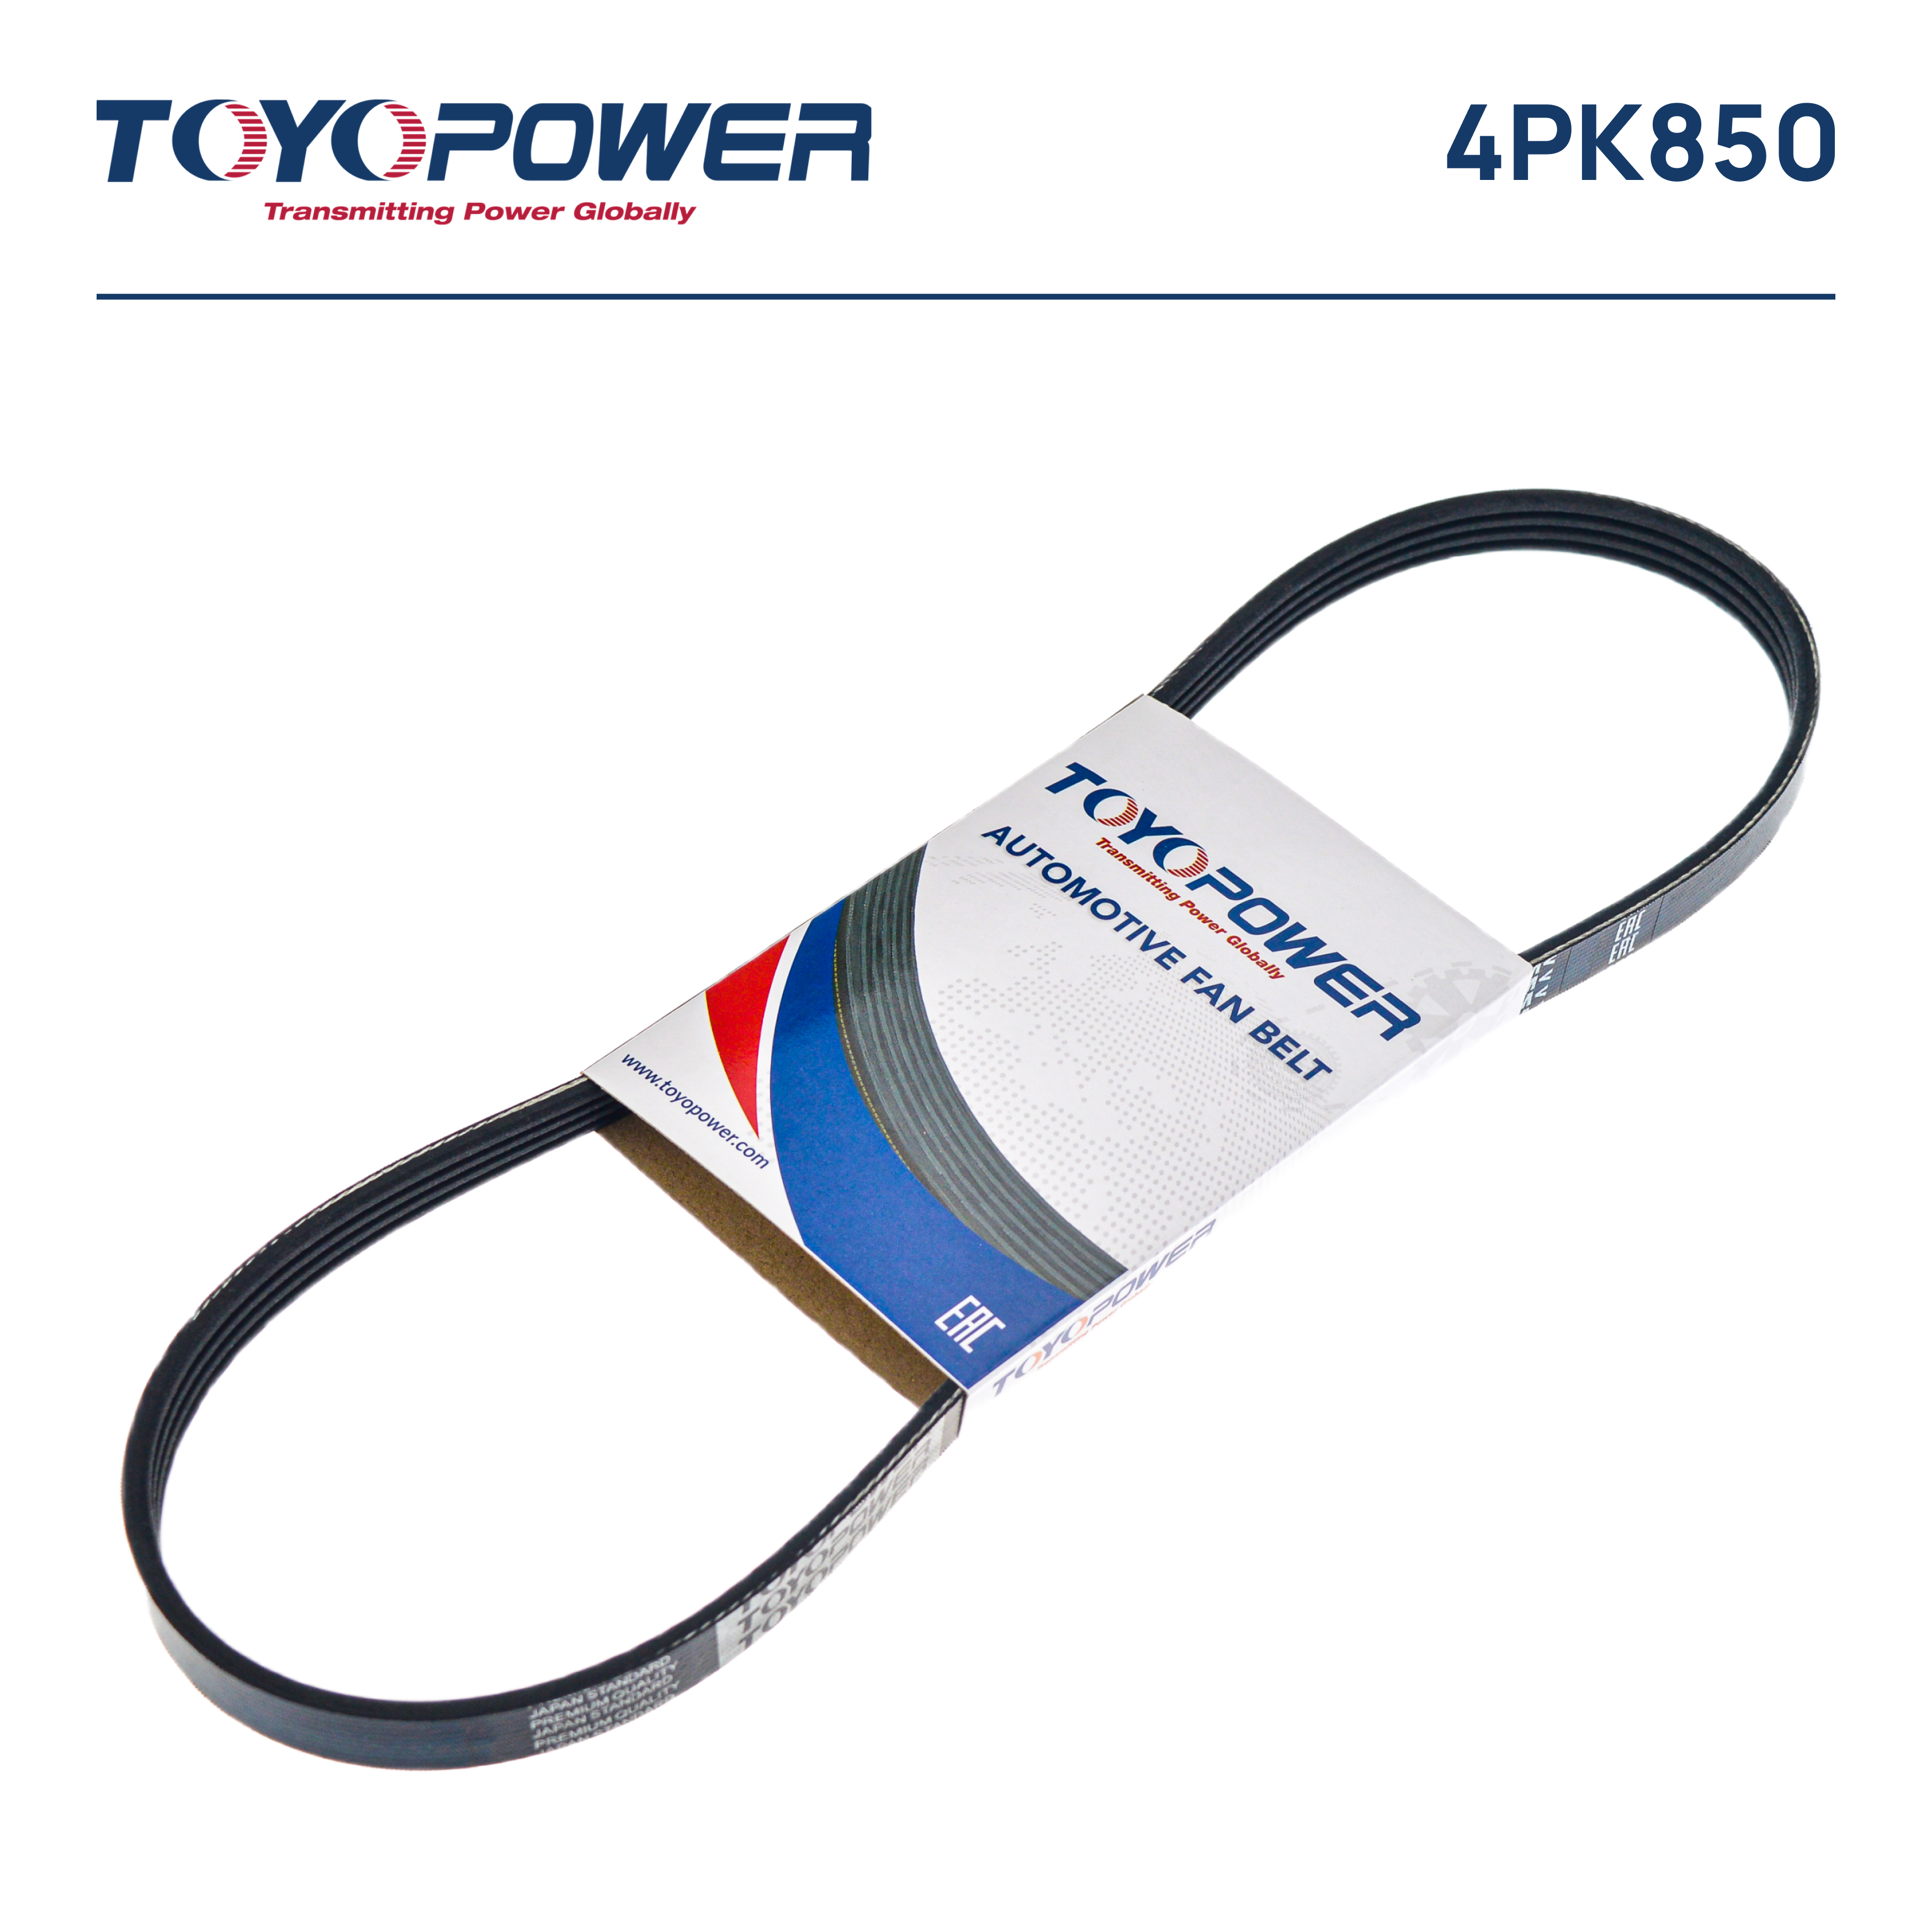 Ремень поликлиновый - Toyopower 4PK850